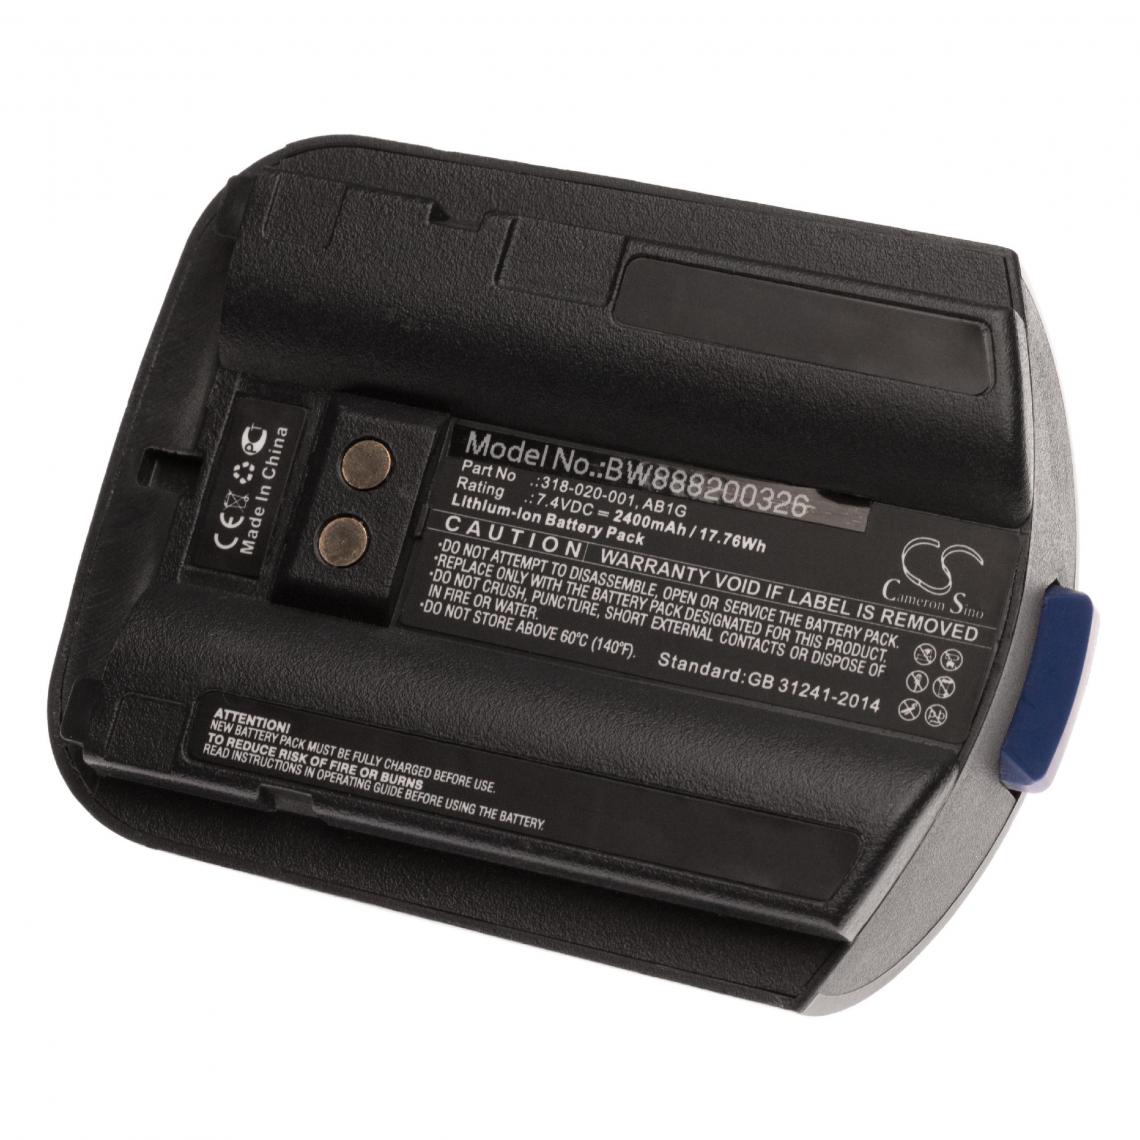 Vhbw - vhbw Li-Ion batterie 2400mAh (7.4V) pour ordinateur portable scanner comme Intermec 318-020-001, AB1G - Caméras Sportives